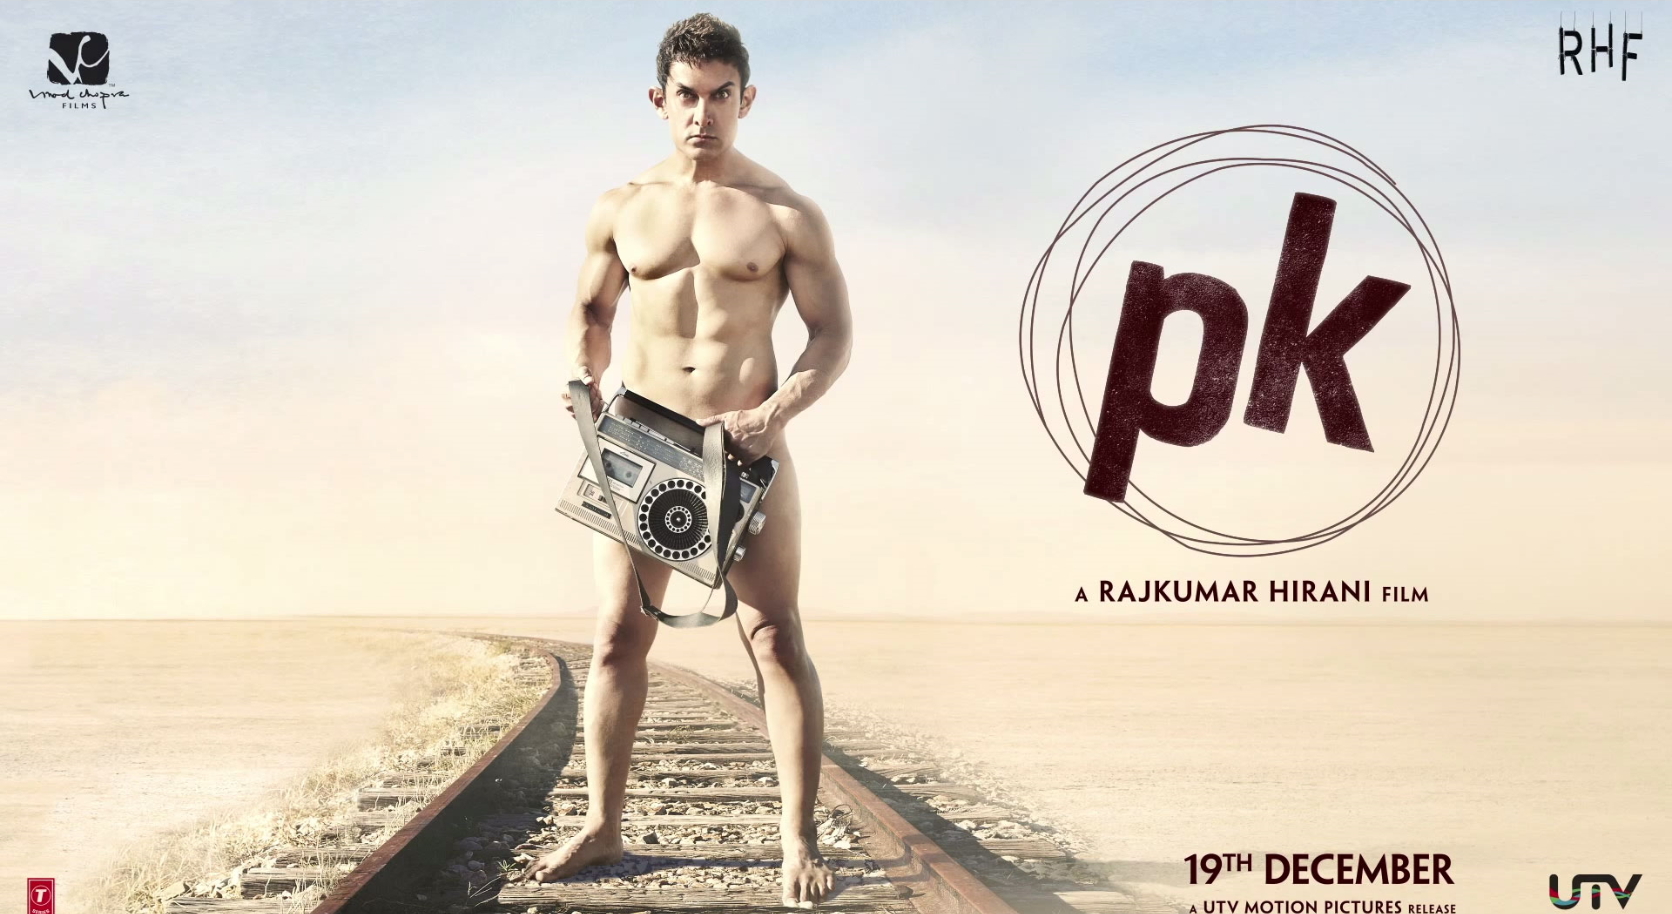 ПиКей (PK) - отличная индийская комедия - Дмитрий Науменко